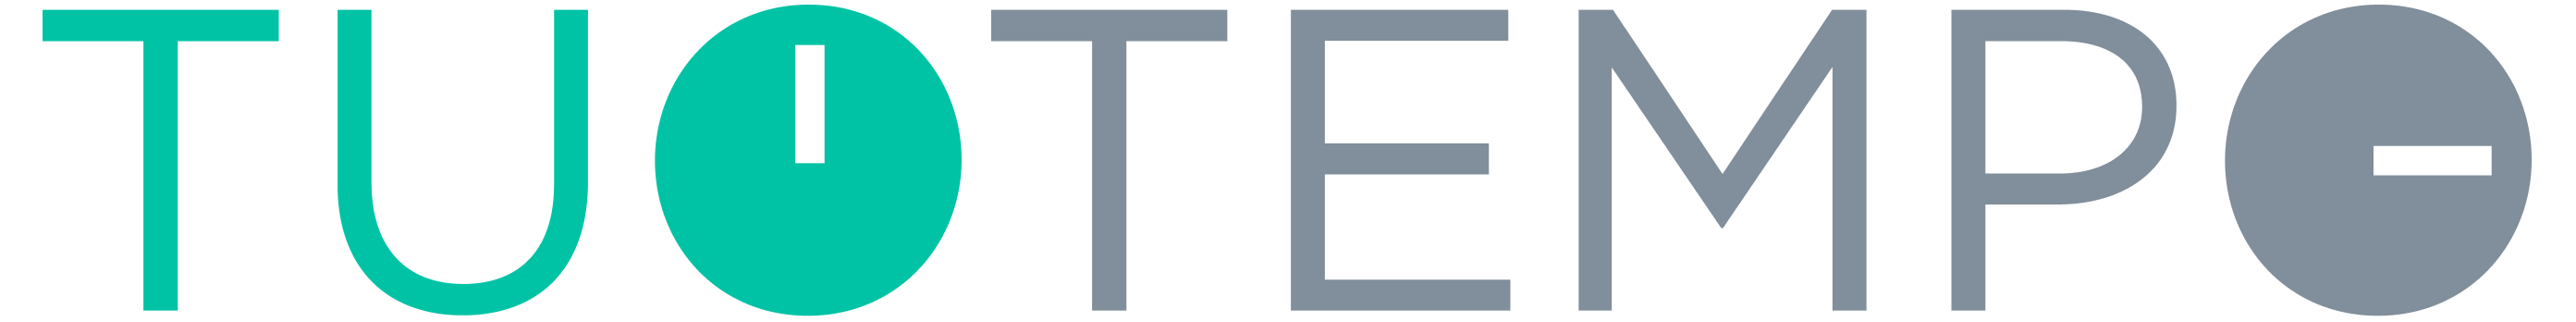 Tuotempo logo-1